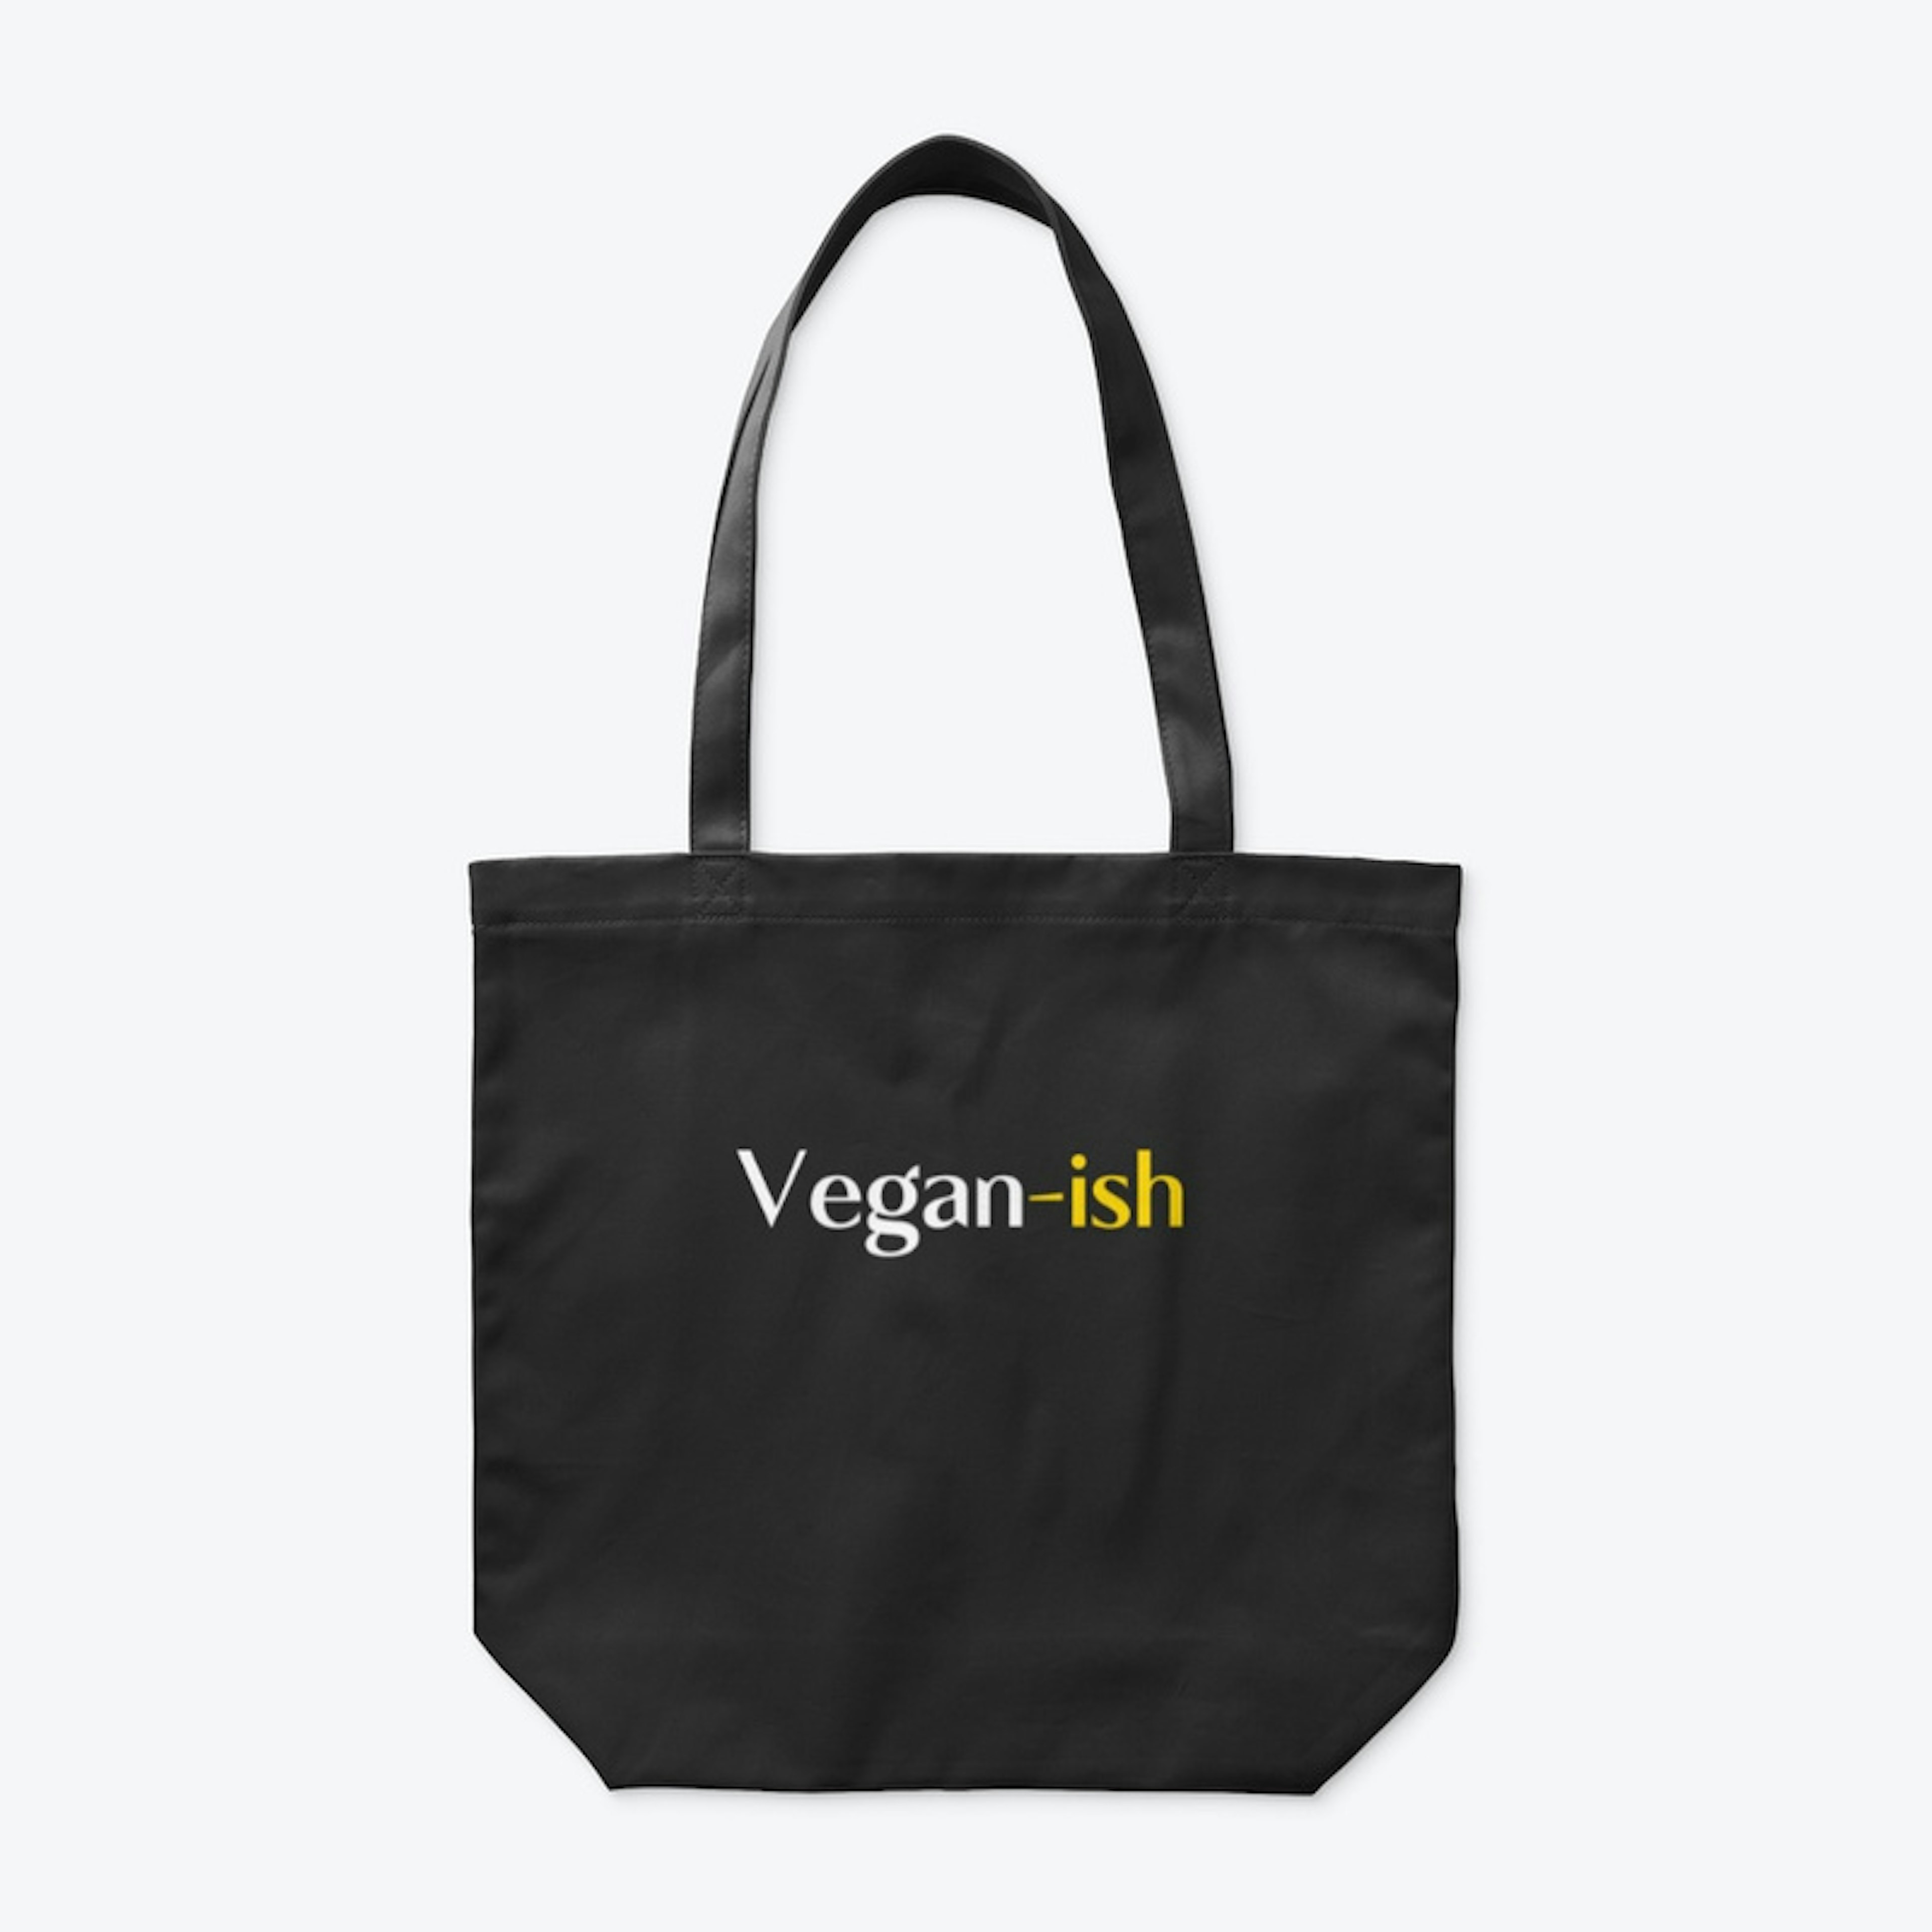 Vegan-ish